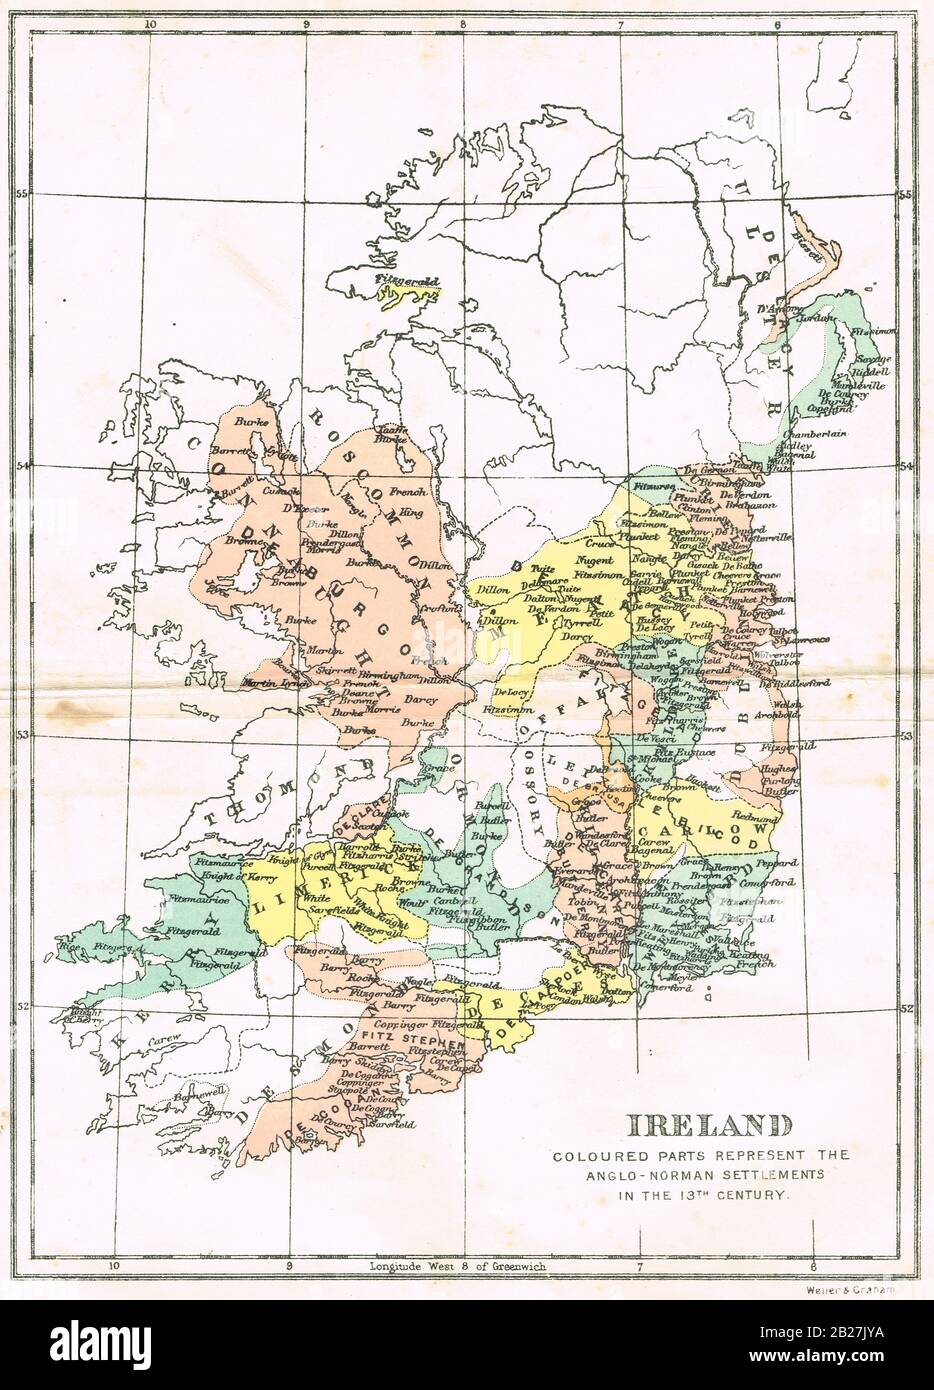 Mappa d'Irlanda, al periodo di settlements anglo-normanni, 13th secolo Foto Stock